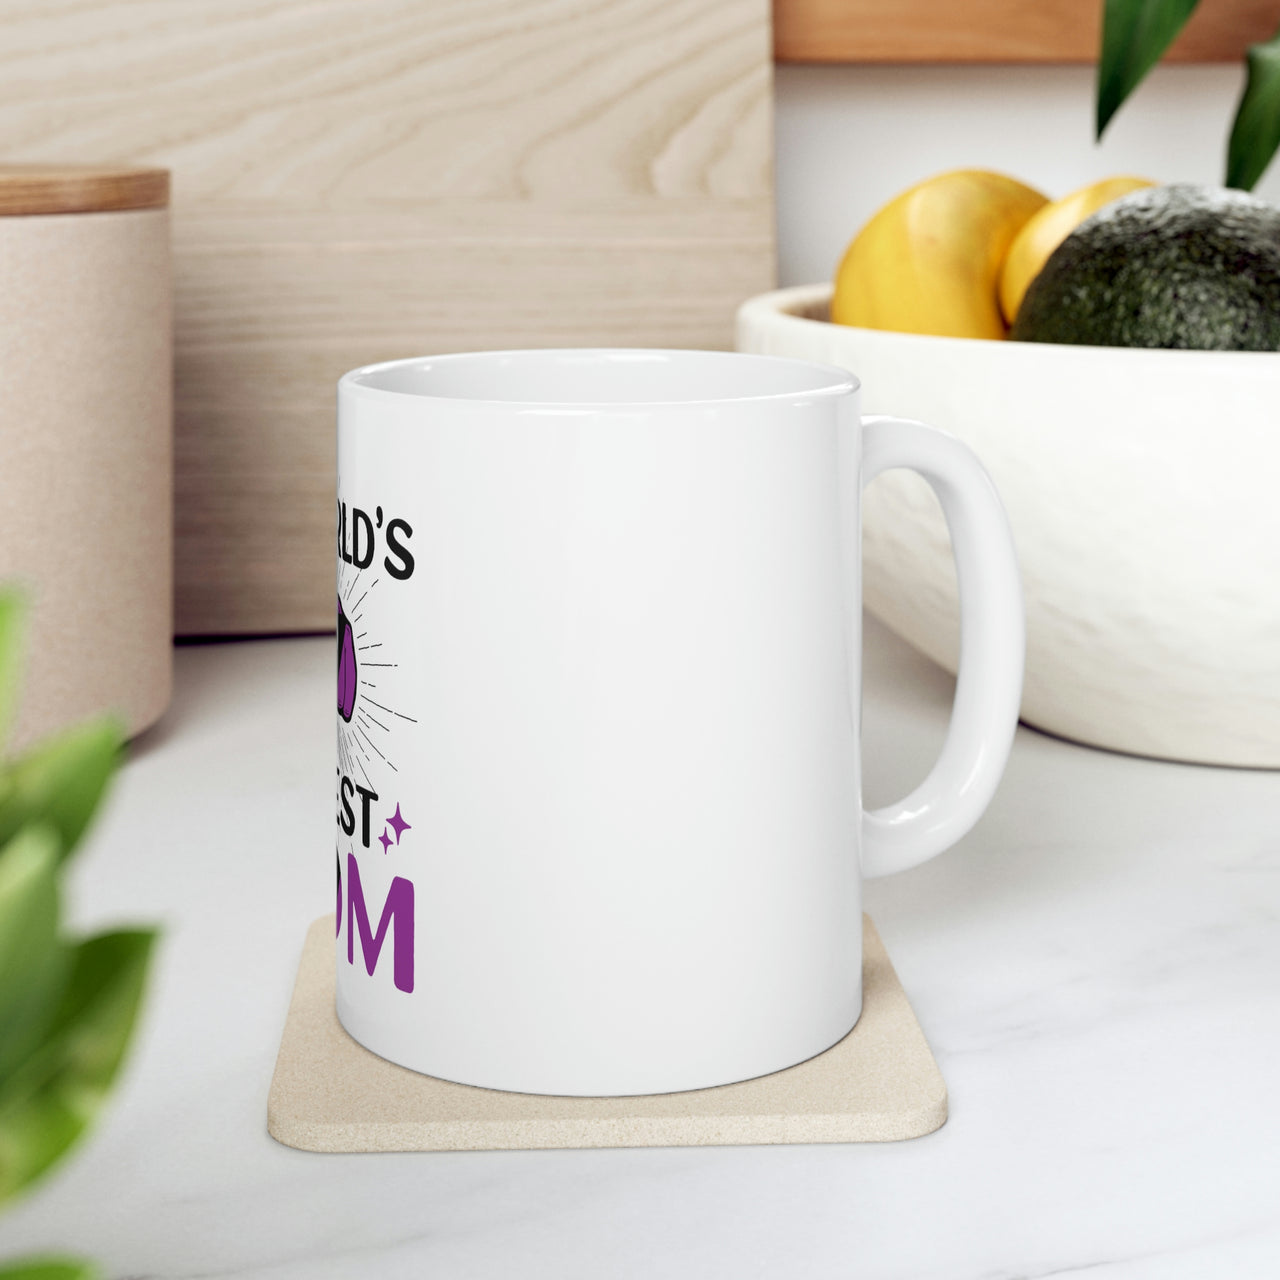 Labrys Lesbian Flag Ceramic Mug  - #1 World's Gayest Mom Printify